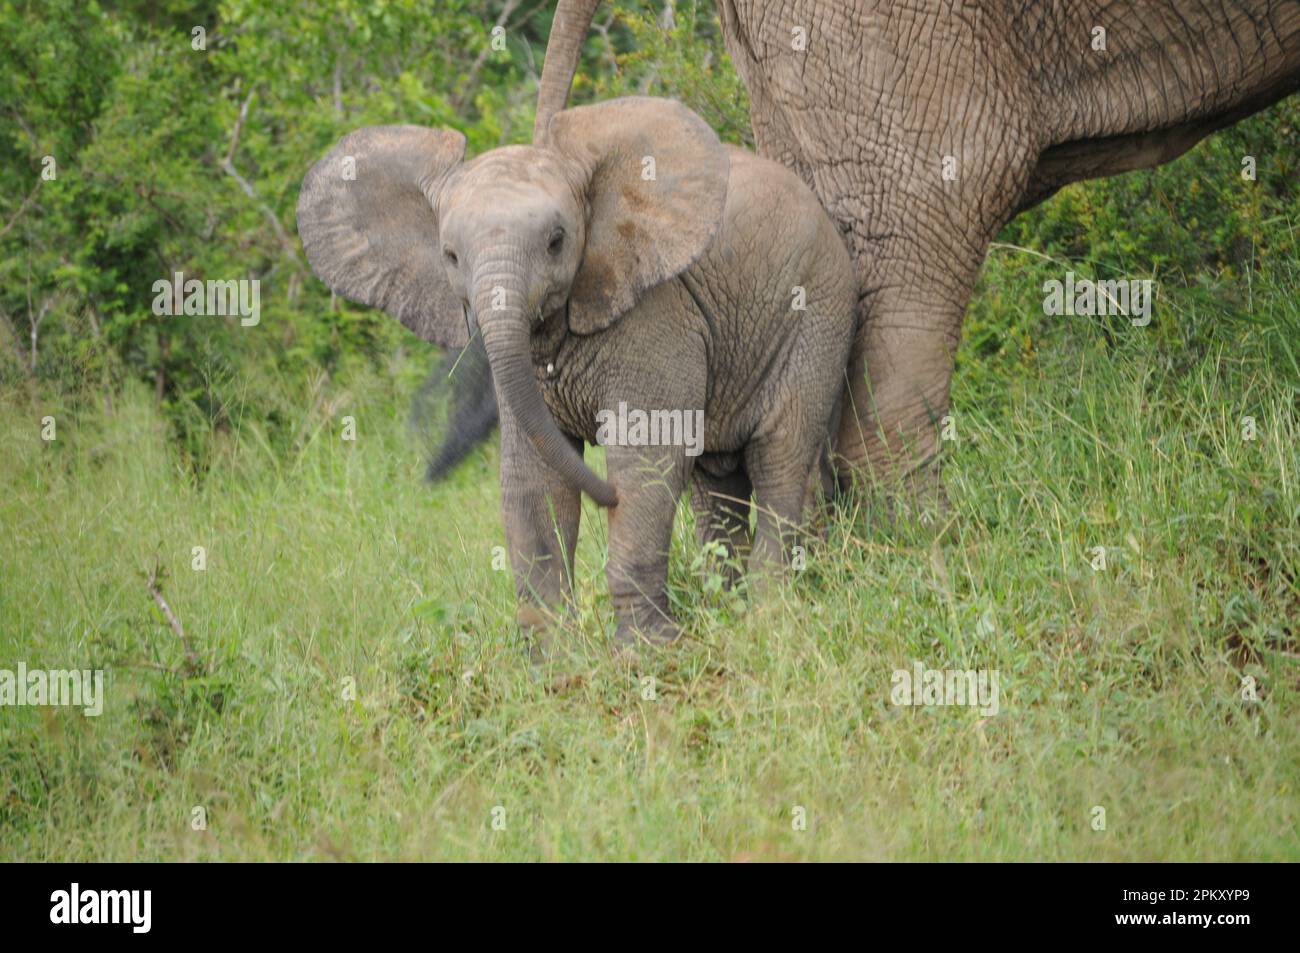 Elephants in the Wild Stock Photo